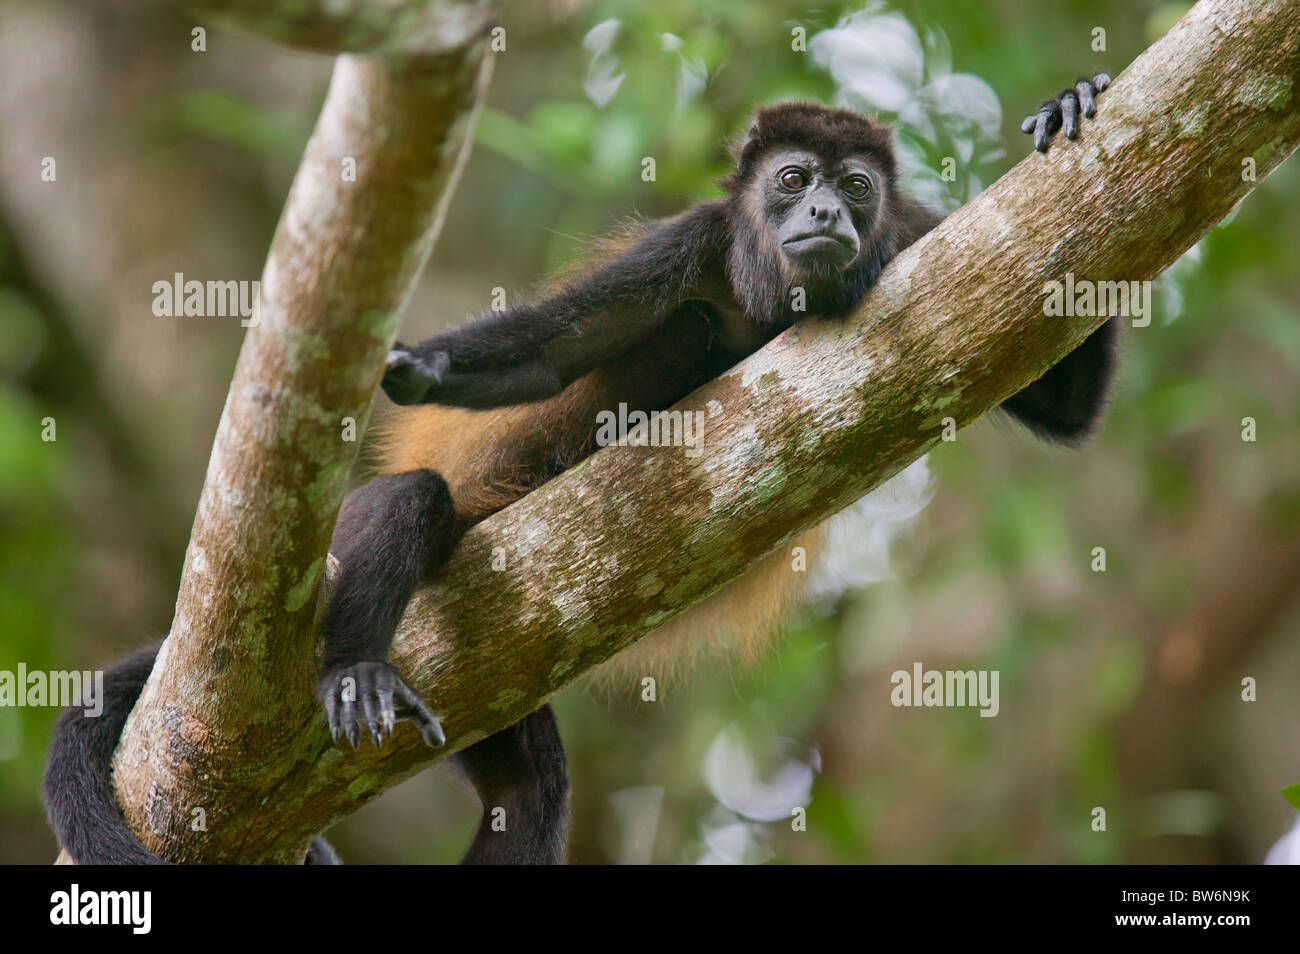 Los monos aulladores de manto, Tortuguero, Costa Rica, América Central. Foto de stock